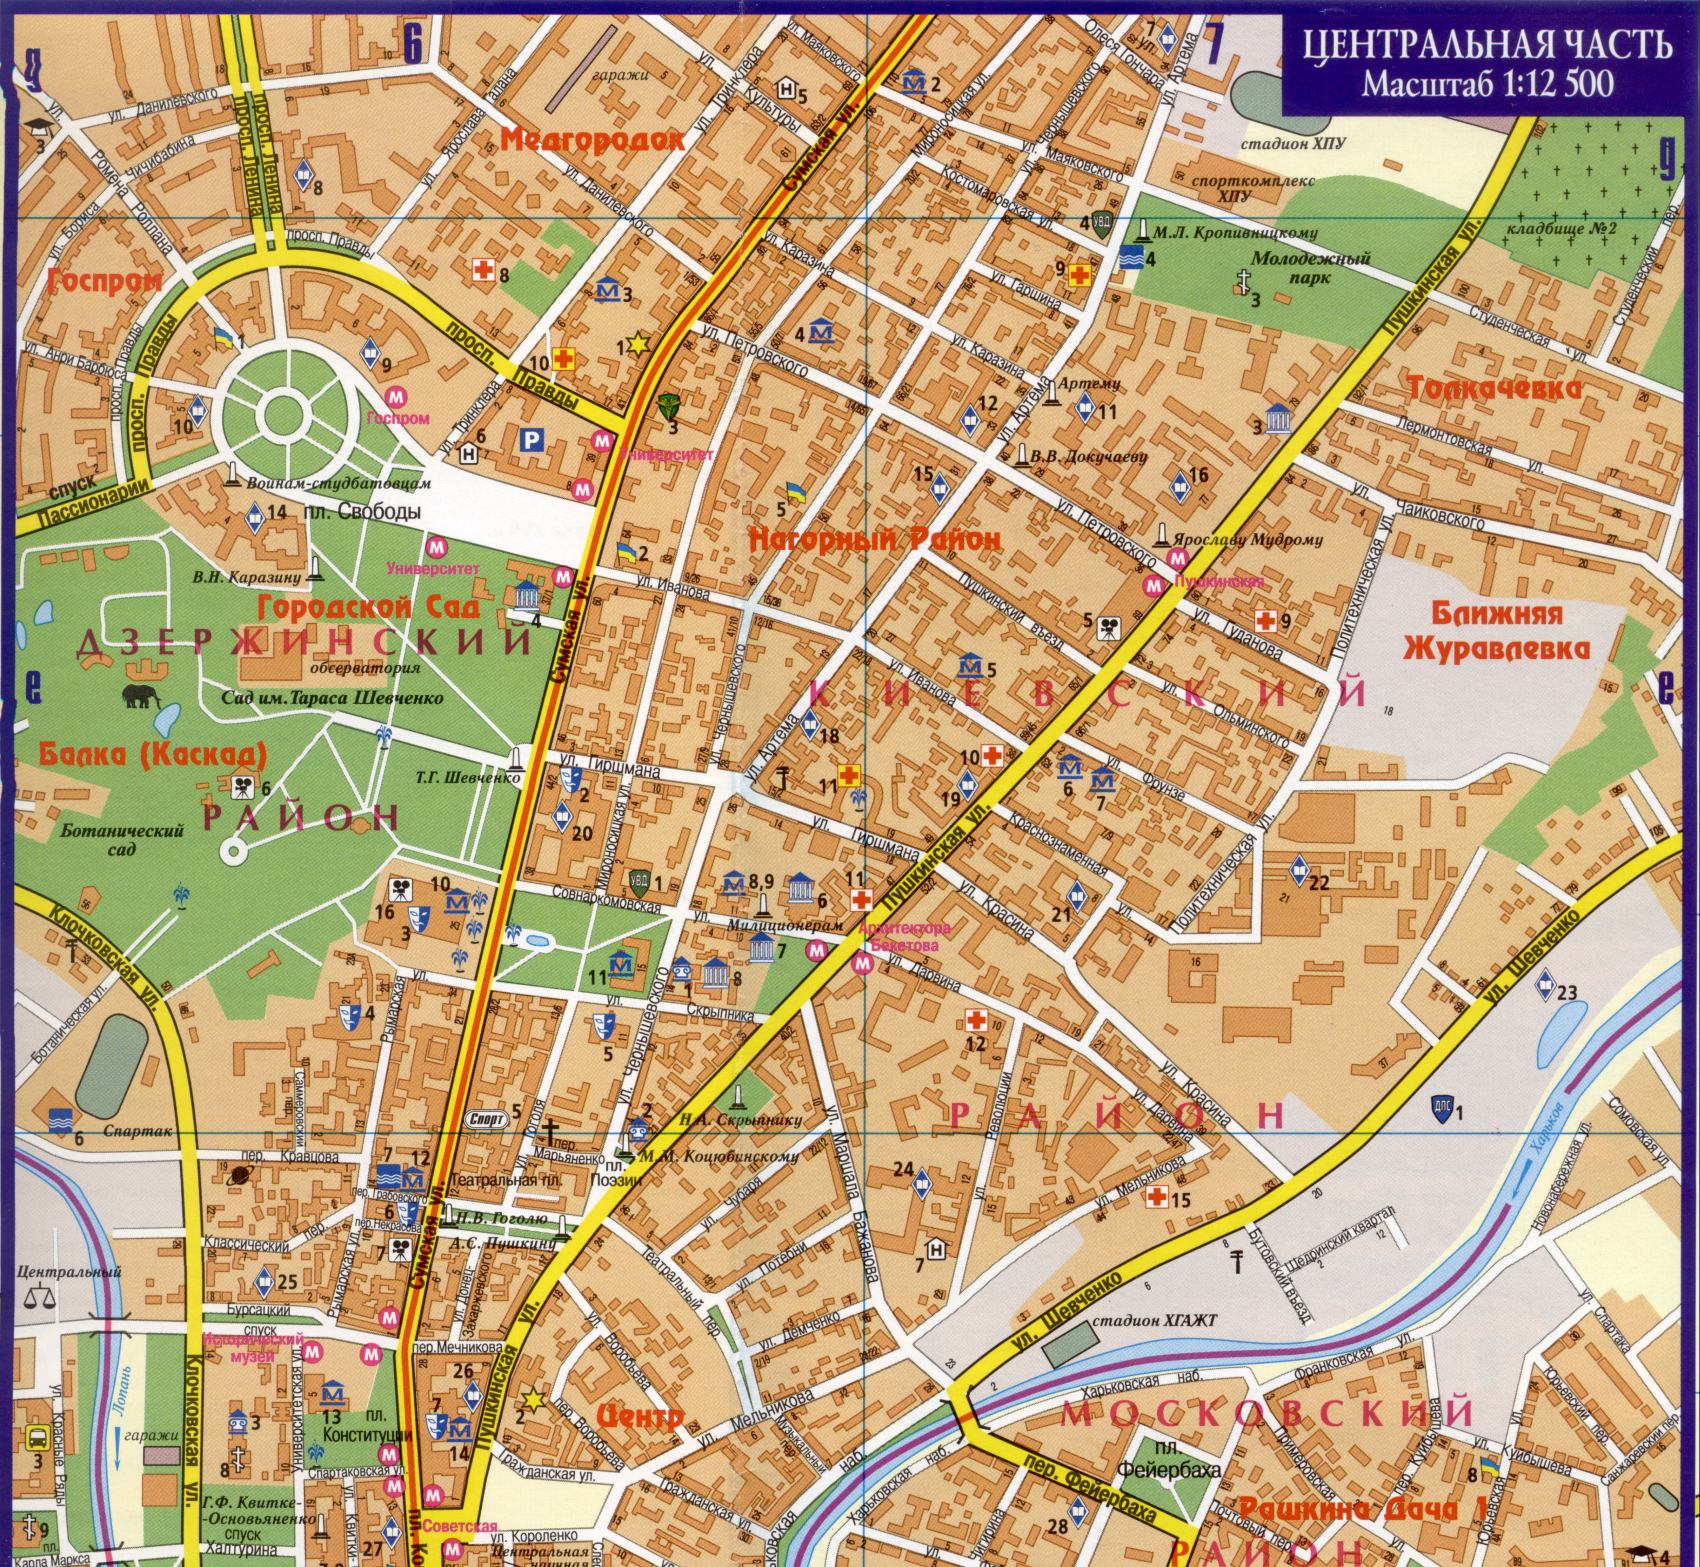 Карта Харькова - подробная карта центра города Харьков